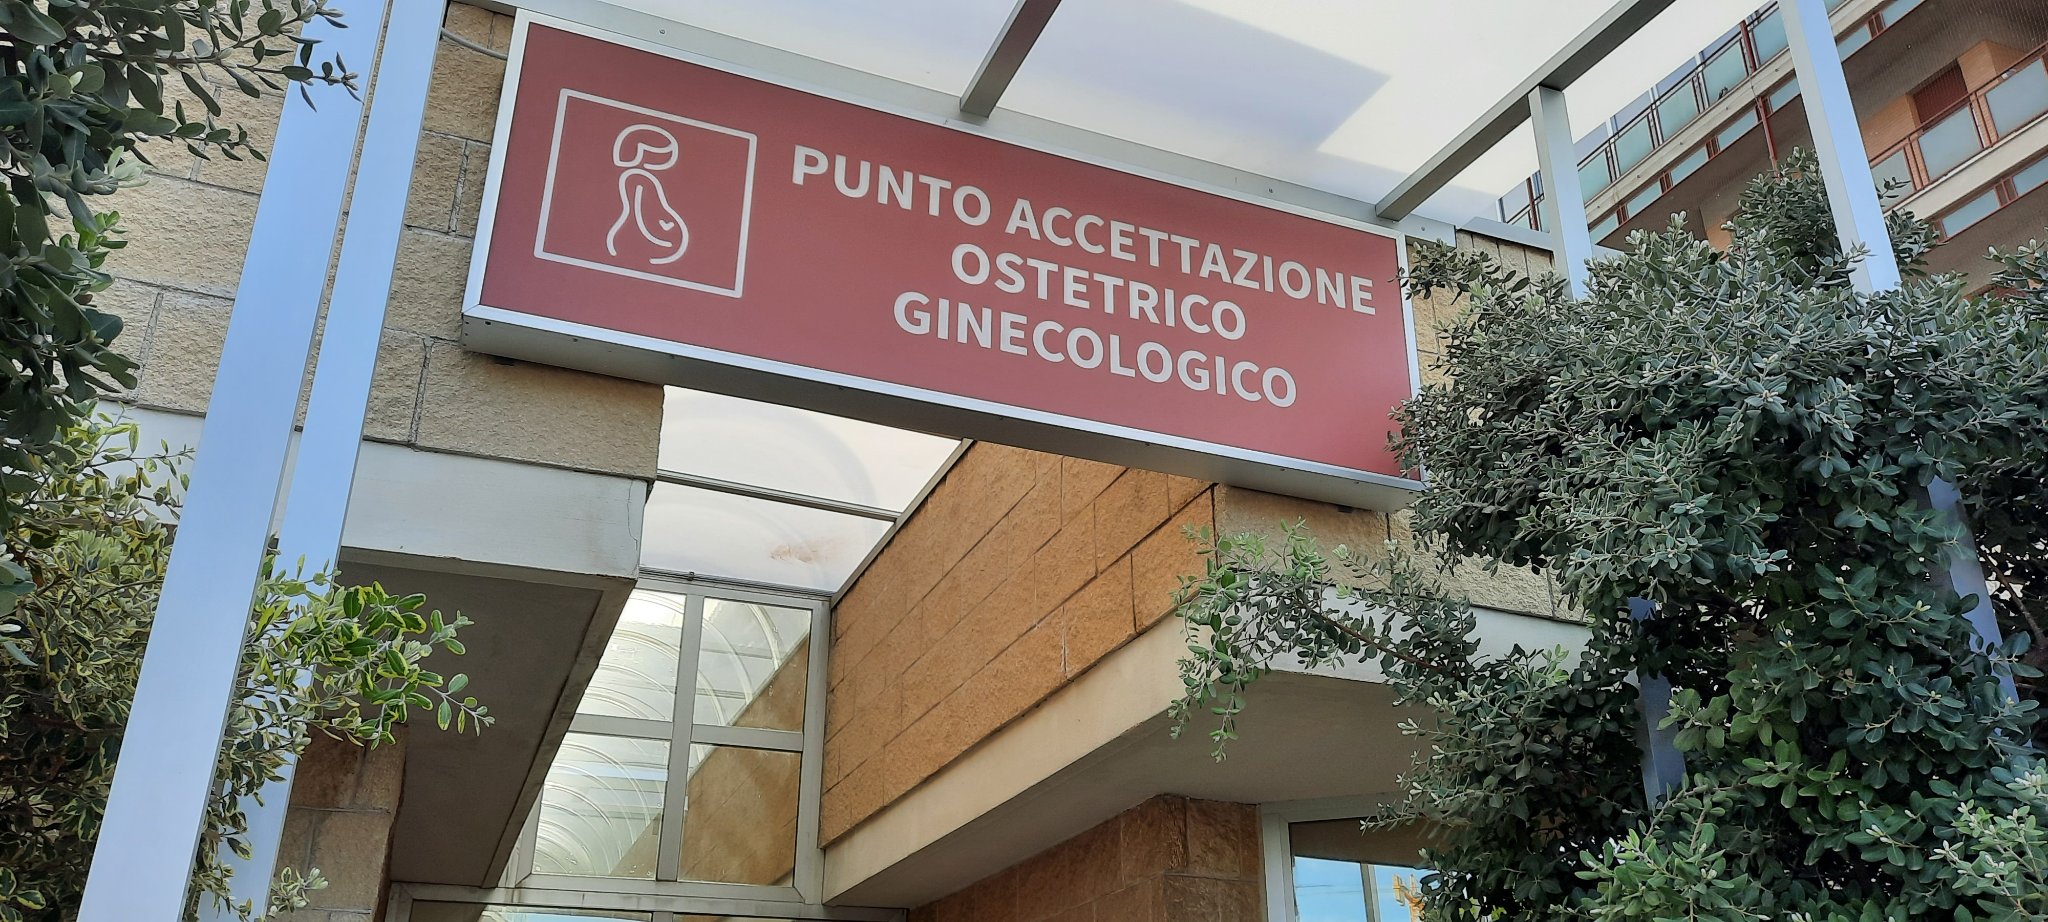 Partorisce, dopo un tumore al seno, grazie ad un programma di Onco fertilità: è il primo caso in Puglia